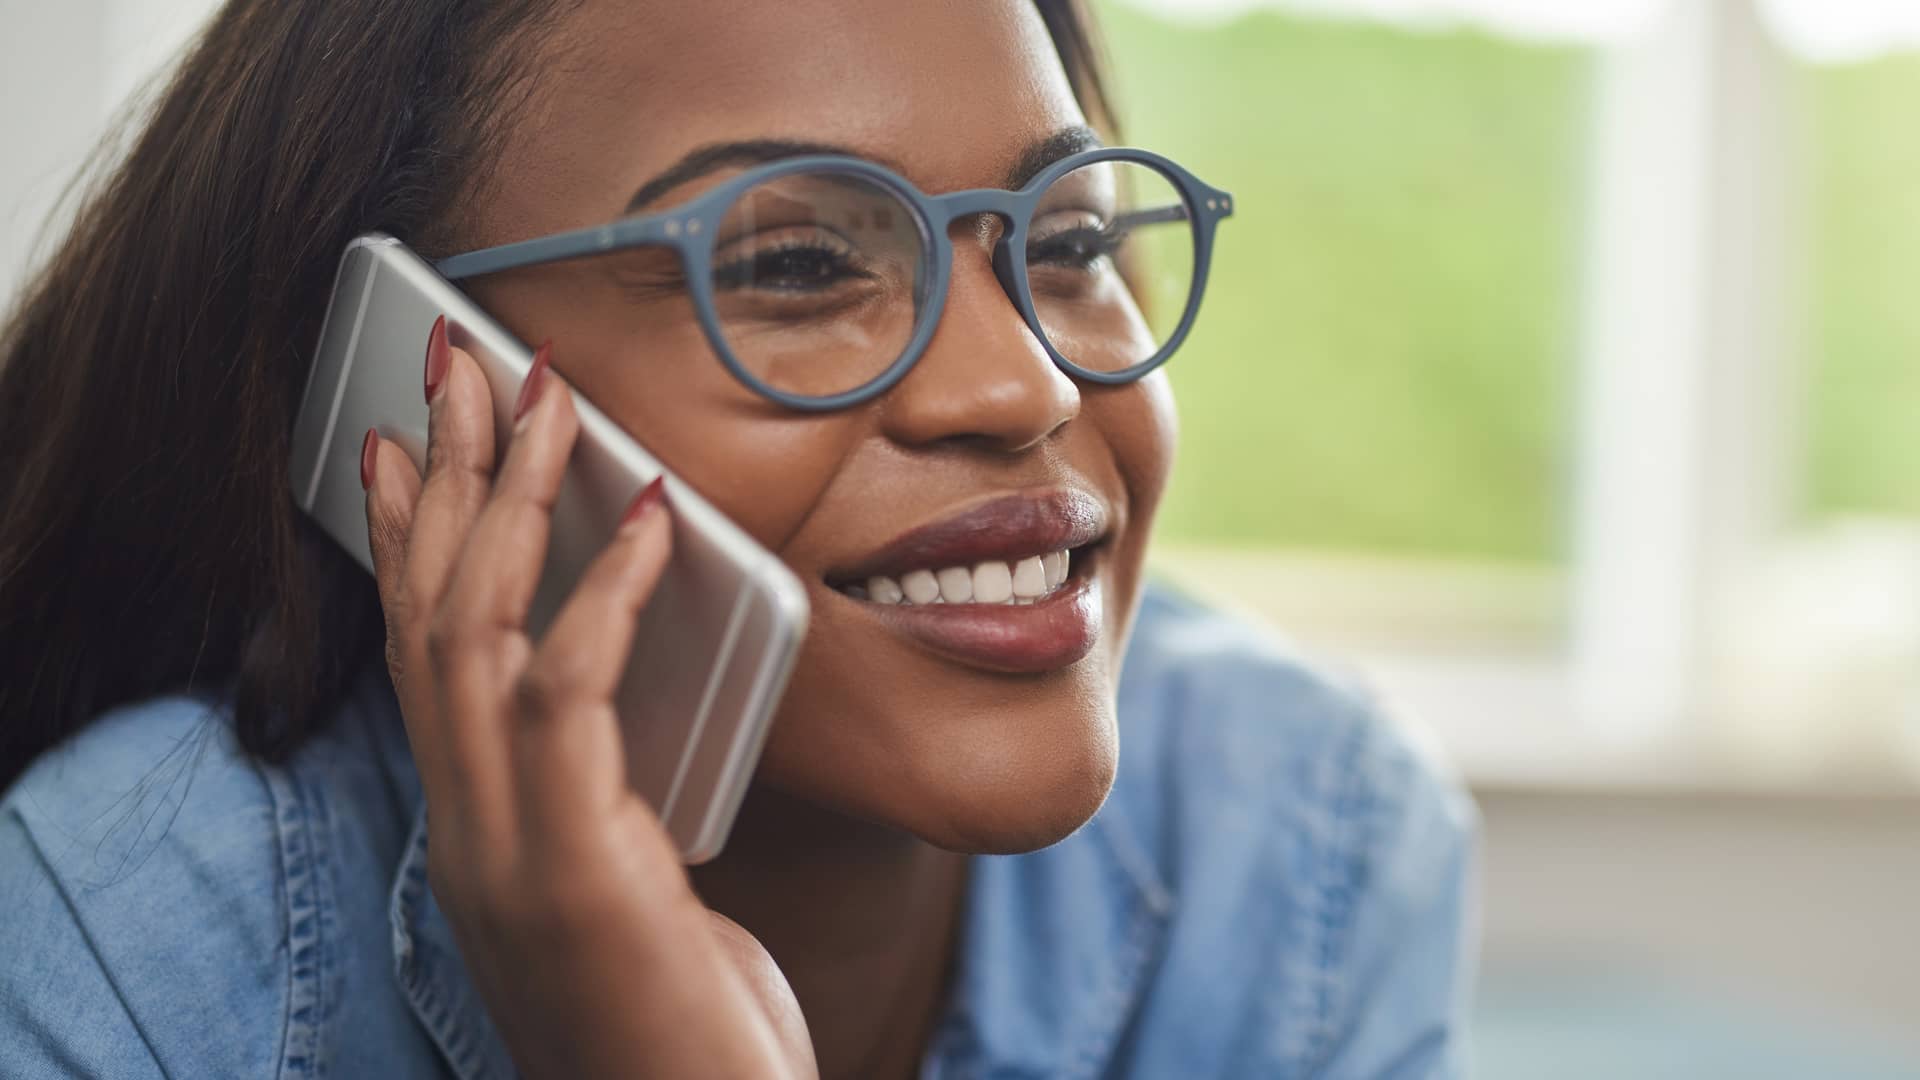 Mujer sonriente manteniendo una conversación distendida por teléfono represeta llamadas ilimitadas